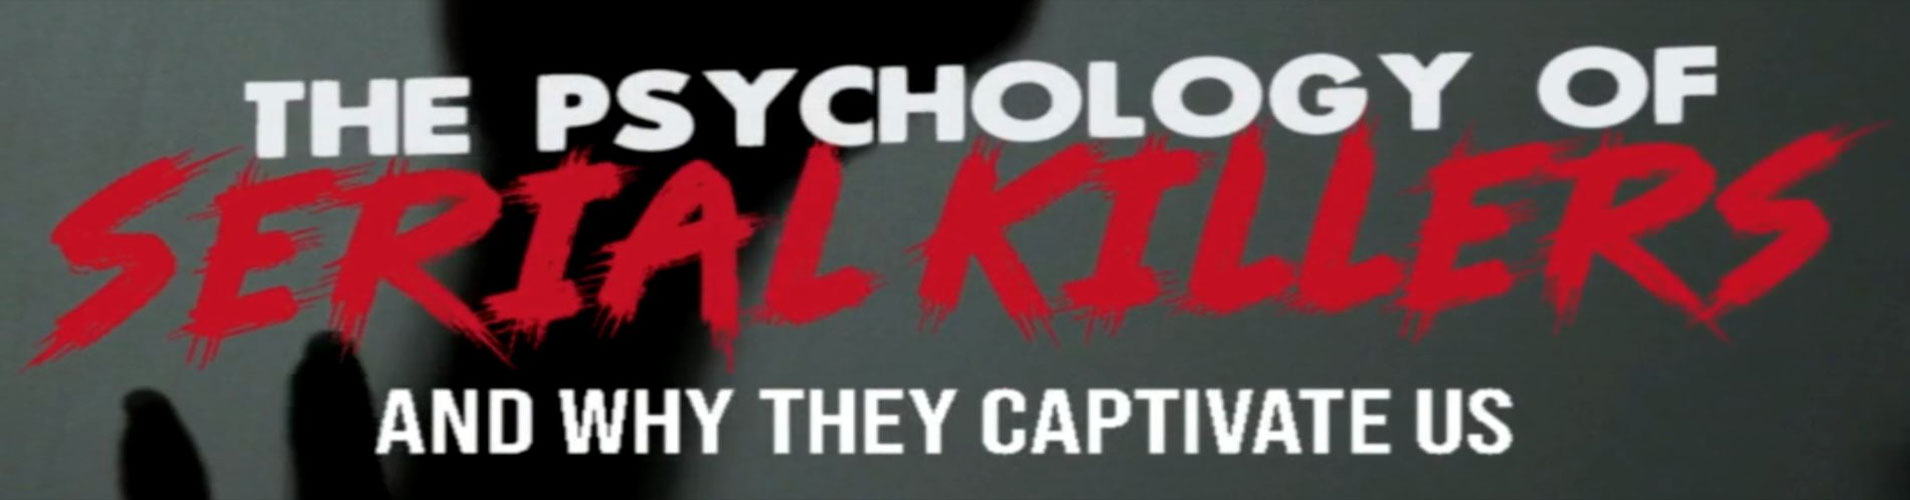 1090x500-Psychology-of-Serial-Killers.jpg